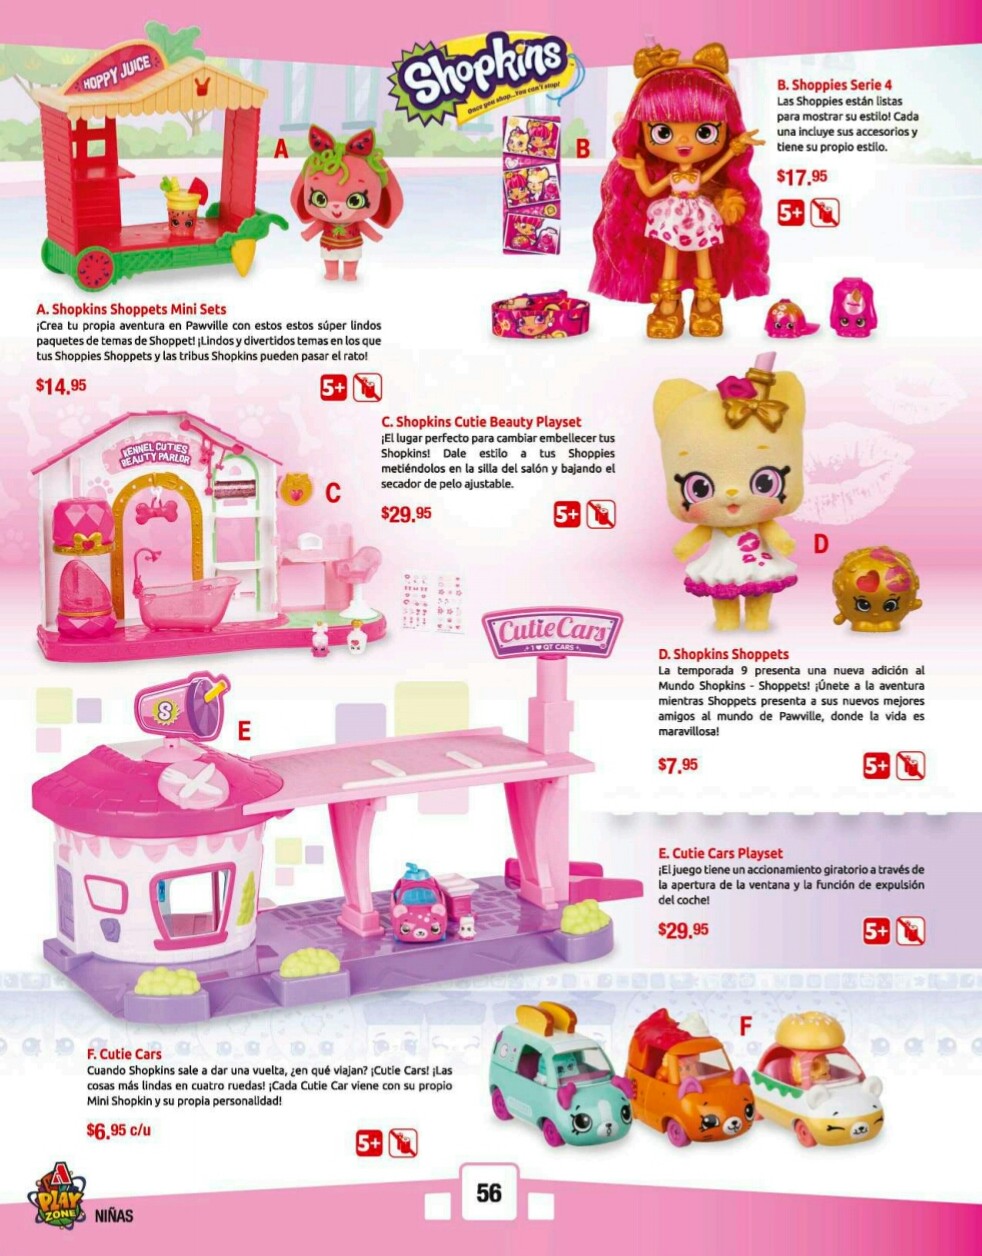 Catalogos juguetes farmacia Arrocha 2018 p56